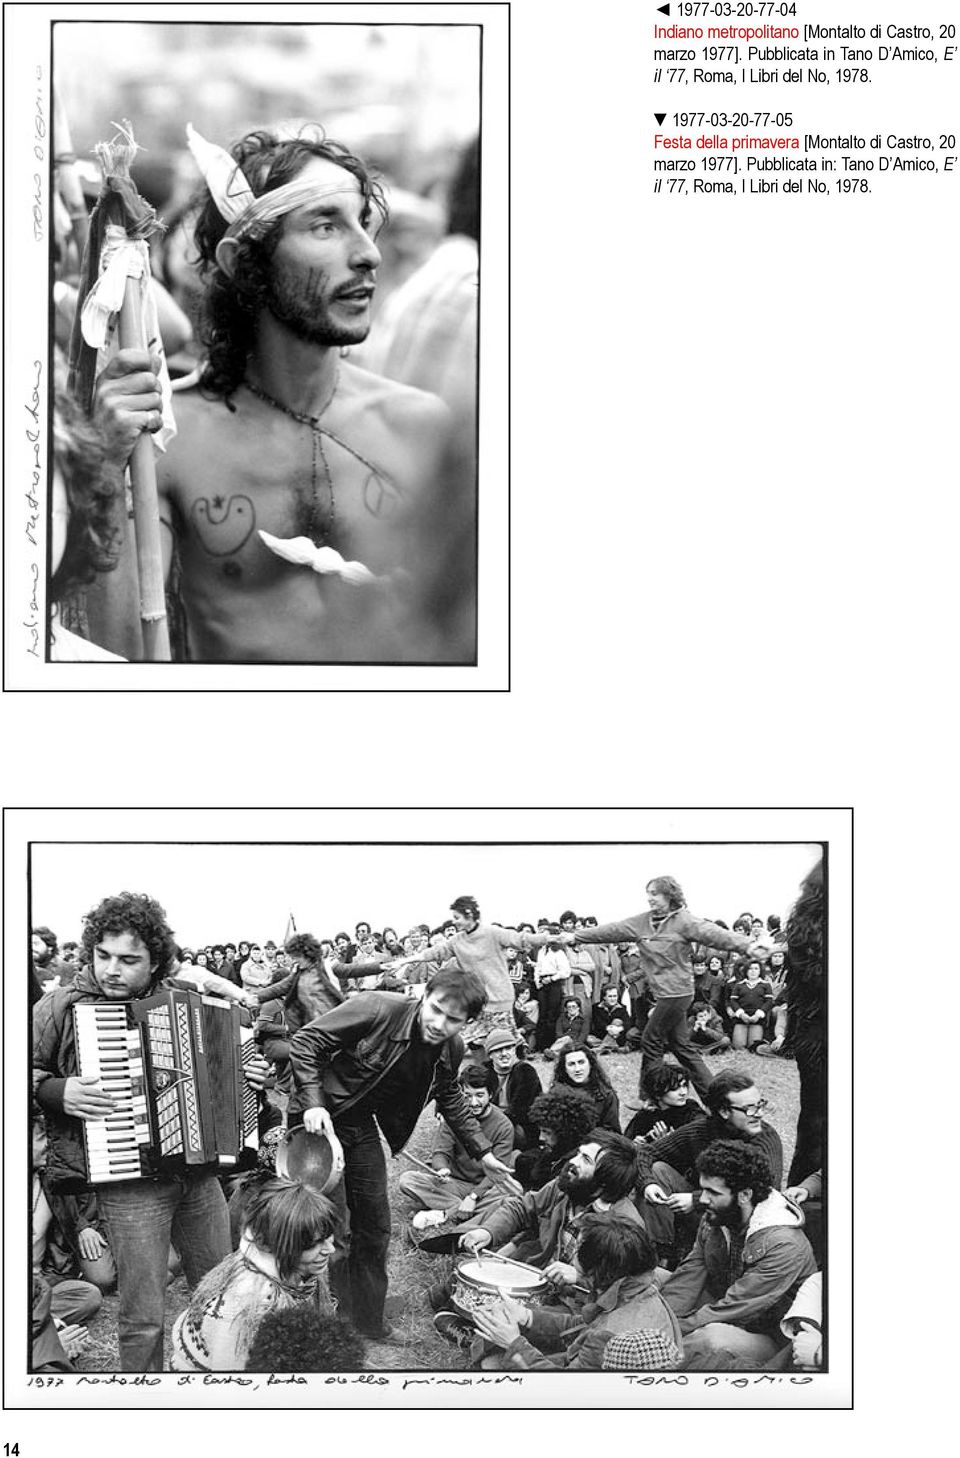 1977-03-20-77-05 Festa della primavera [Montalto di Castro, 20 marzo